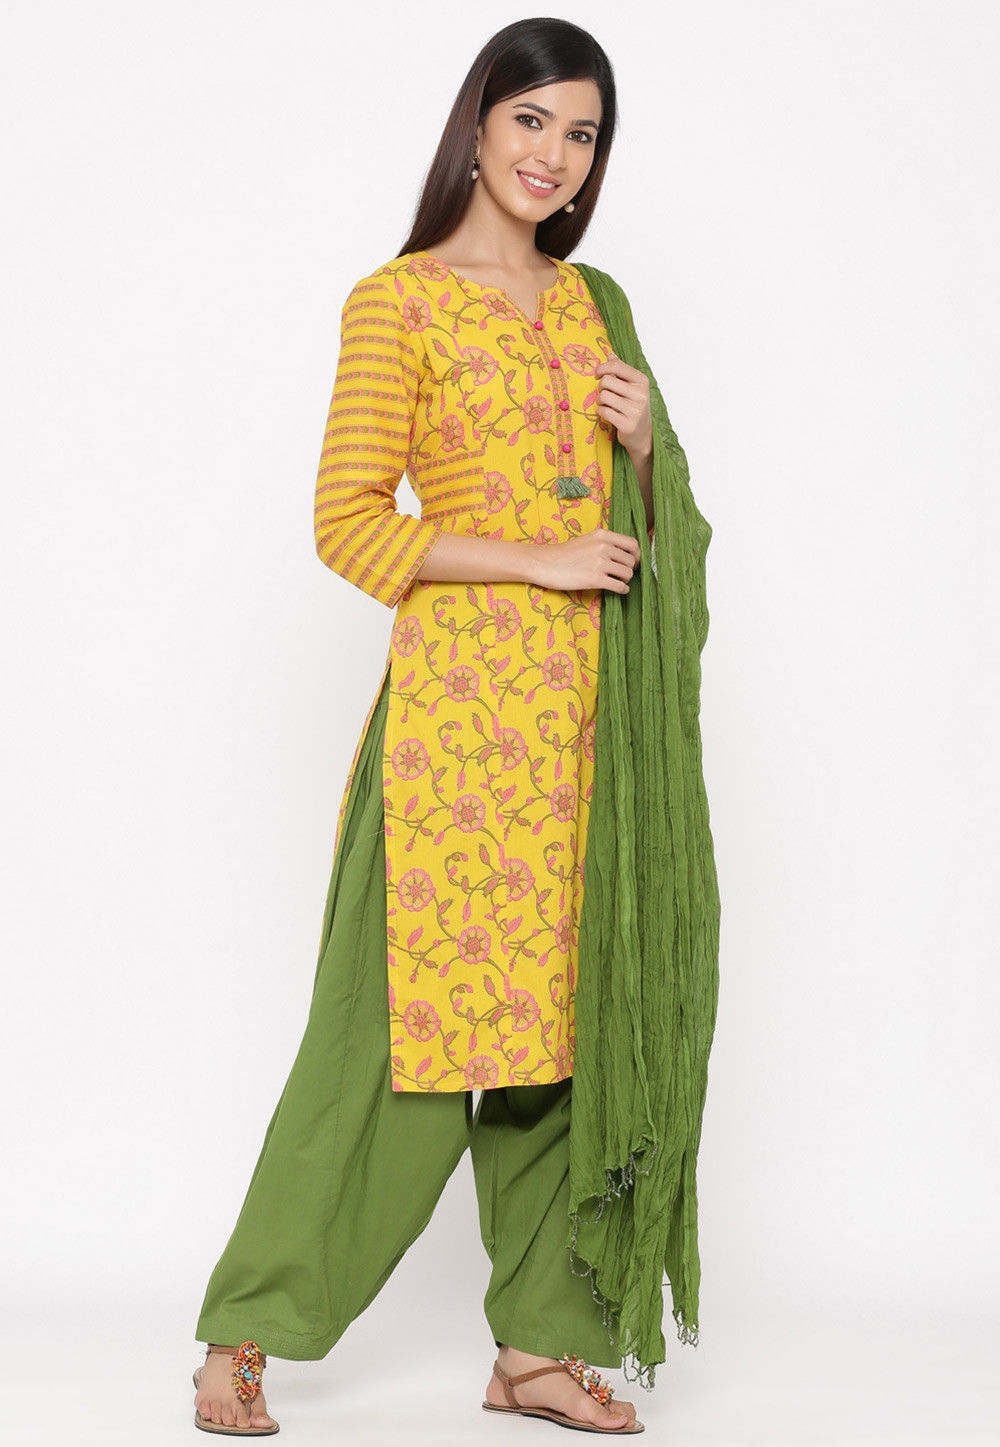 Buy Printed Cotton Punjabi Suit in Yellow Online : KTN511 - Utsav Fashion